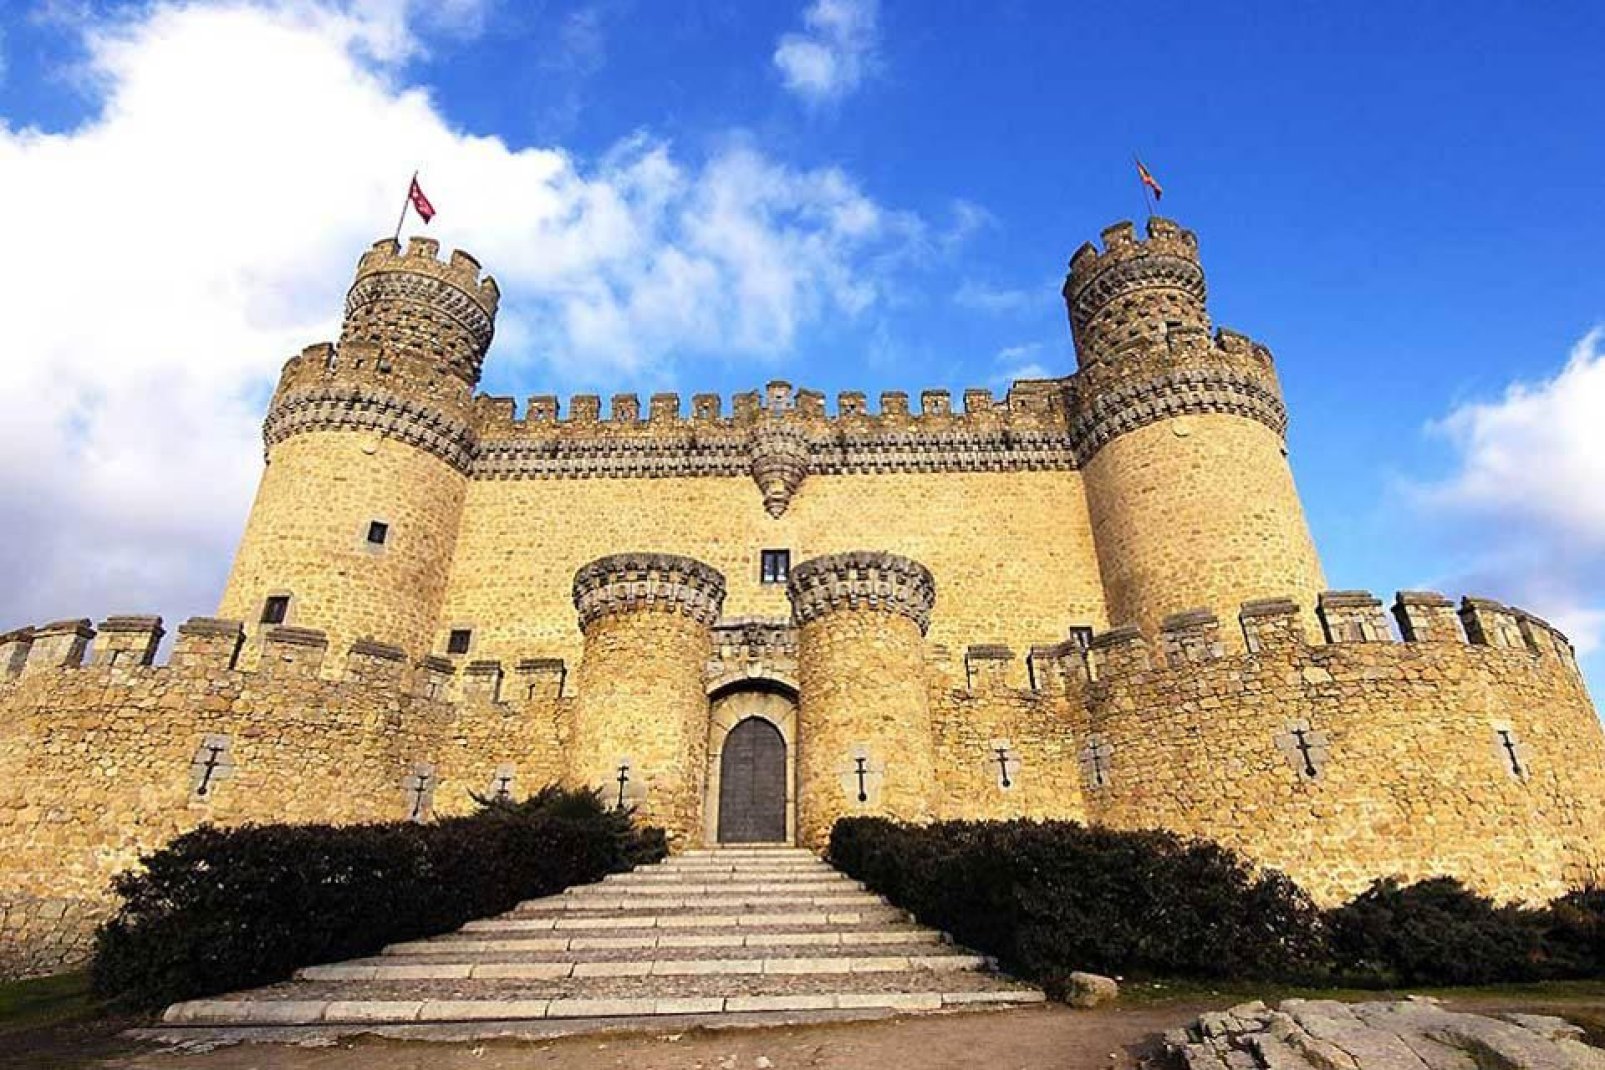 Ce château-fort datant du Moyen Âge est le mieux conservé de la communauté autonome de Madrid. On y trouve le sceau de Pedro Gonzalez de Mendoza, archevêque de Tolède.